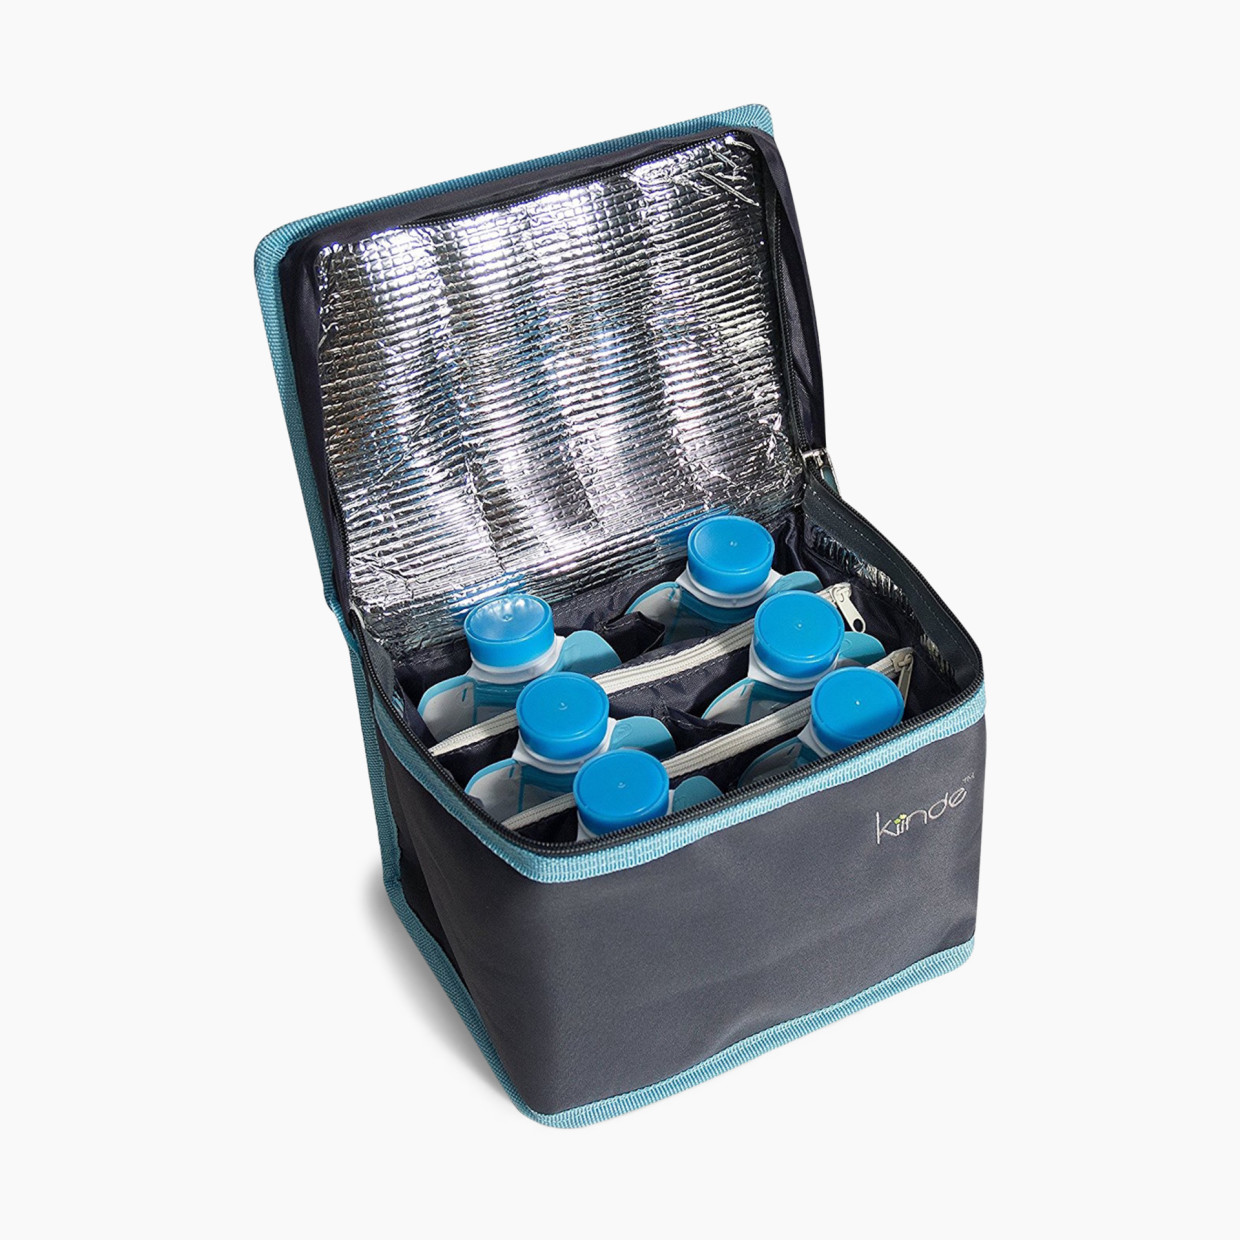 Medela Breastmilk Cooler Set (Pack of 2)